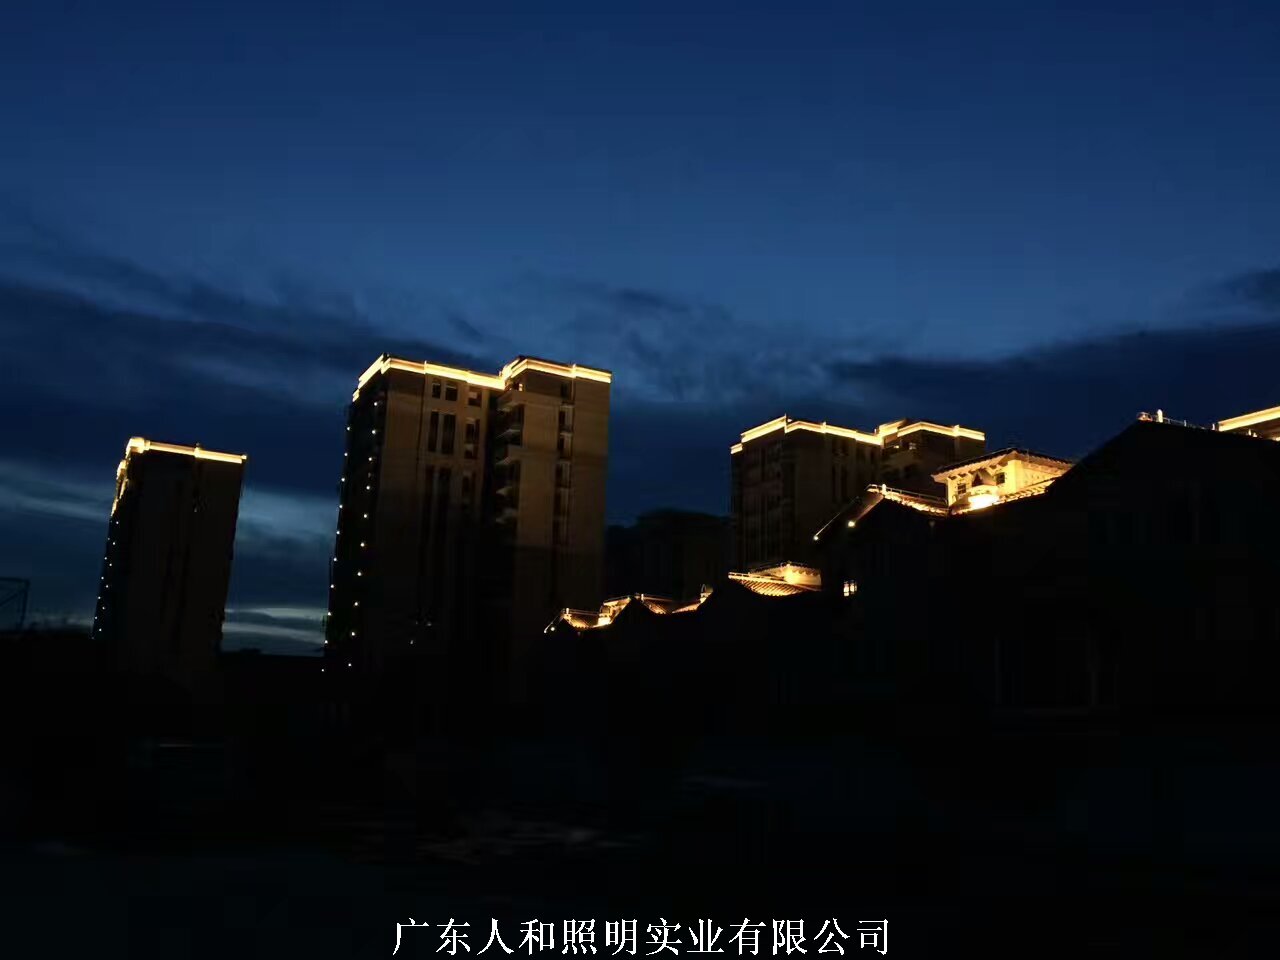 福建-大唐印象夜景三期